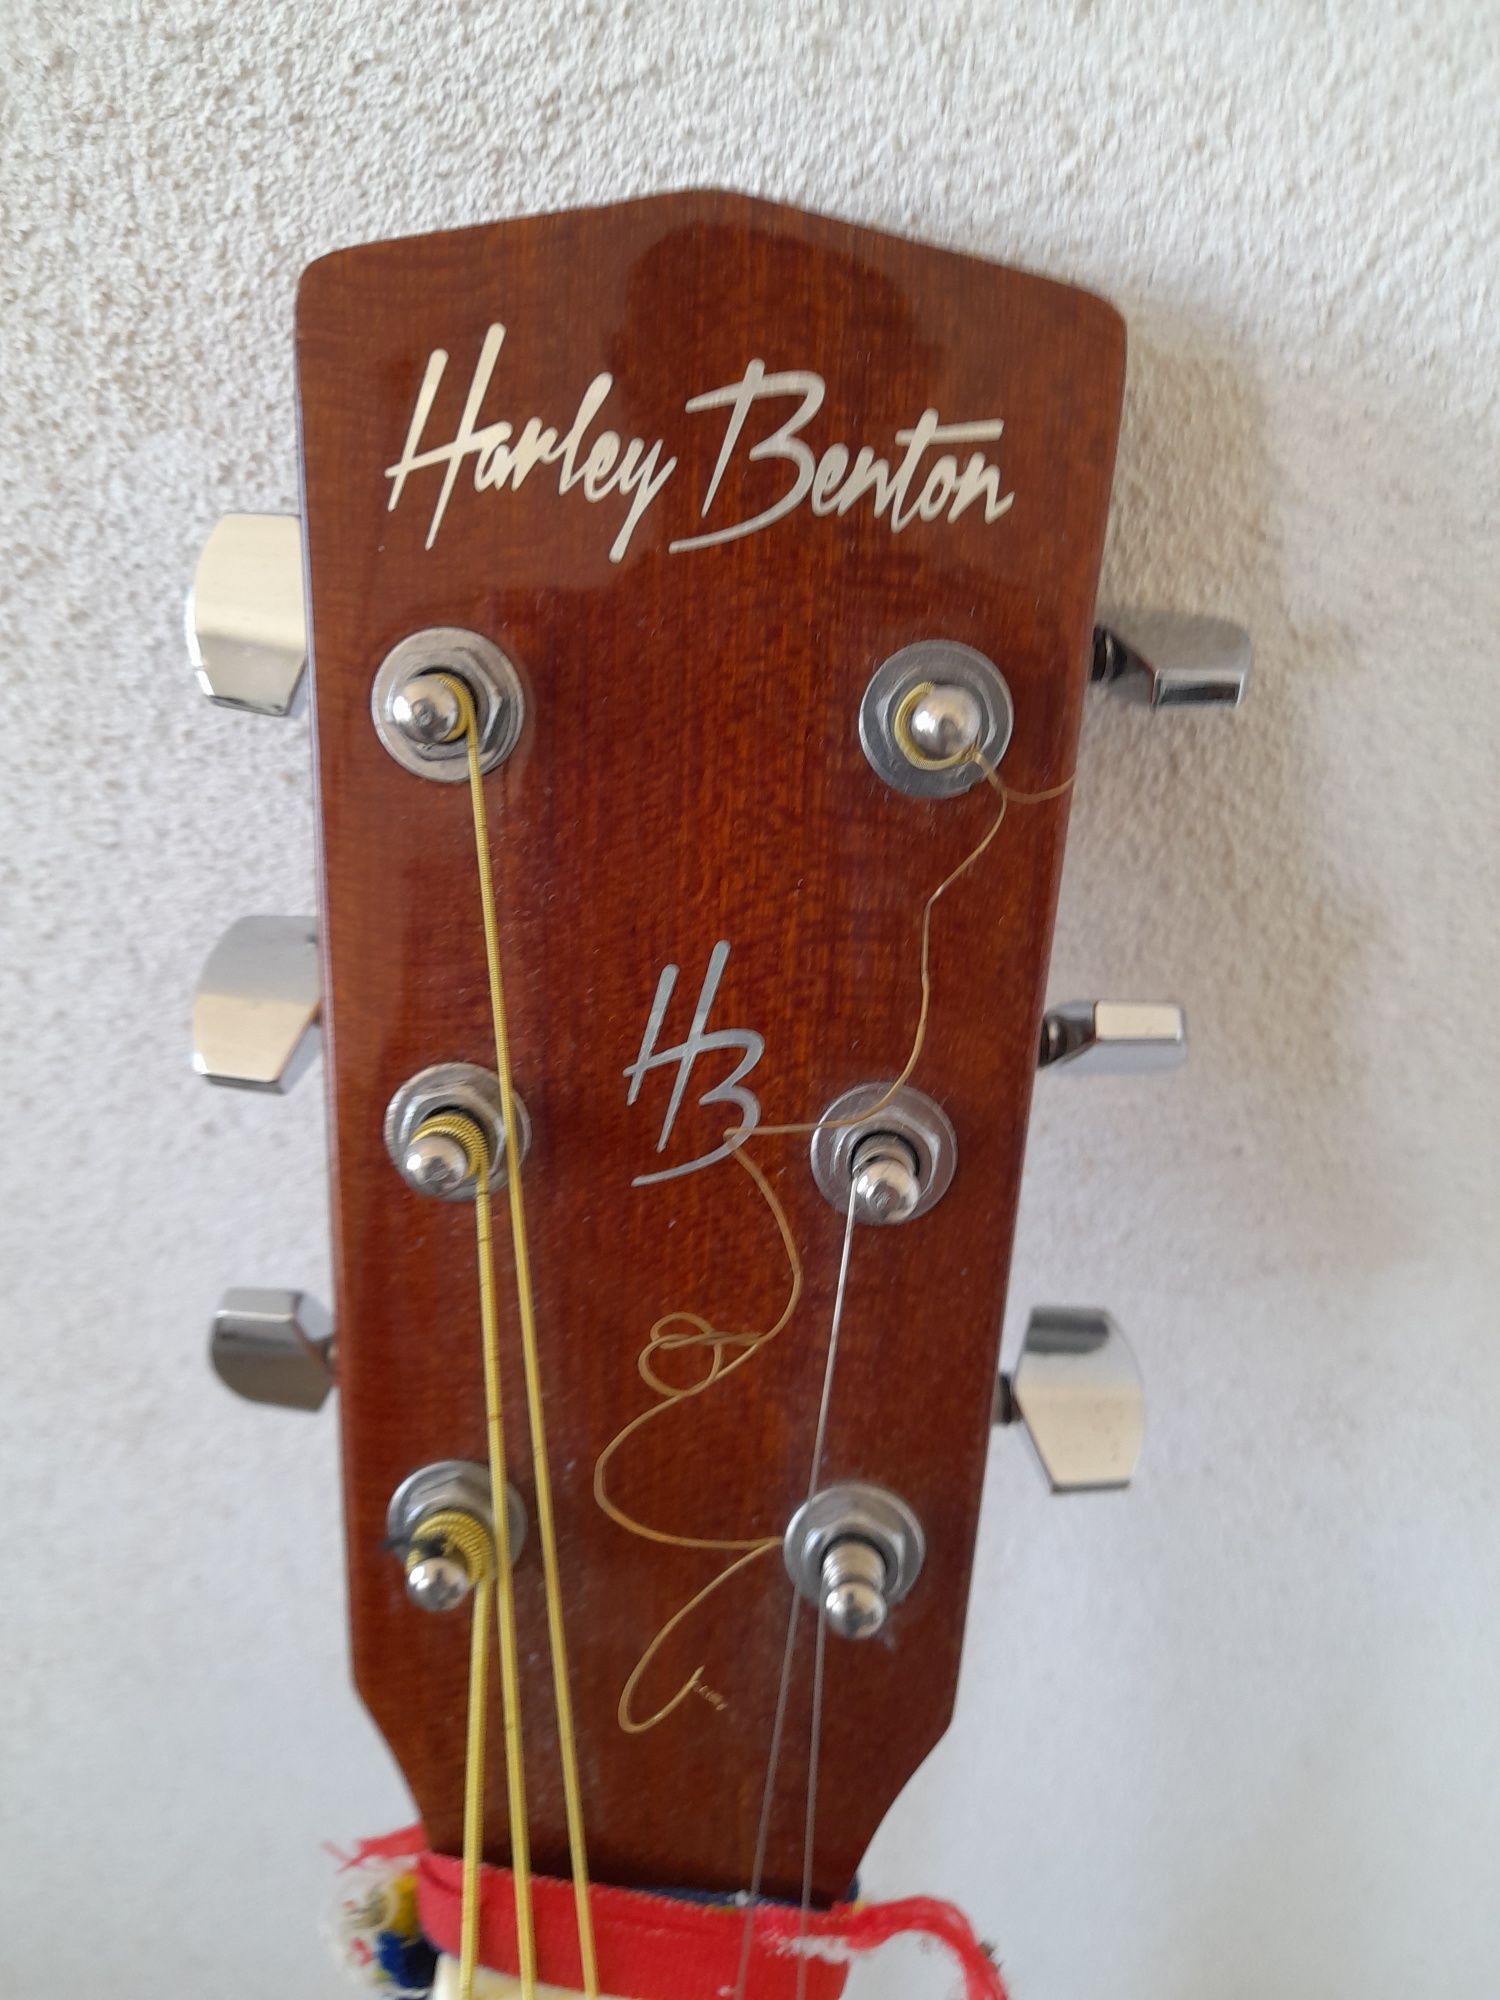 Vand chitara clasica originala Harley berton